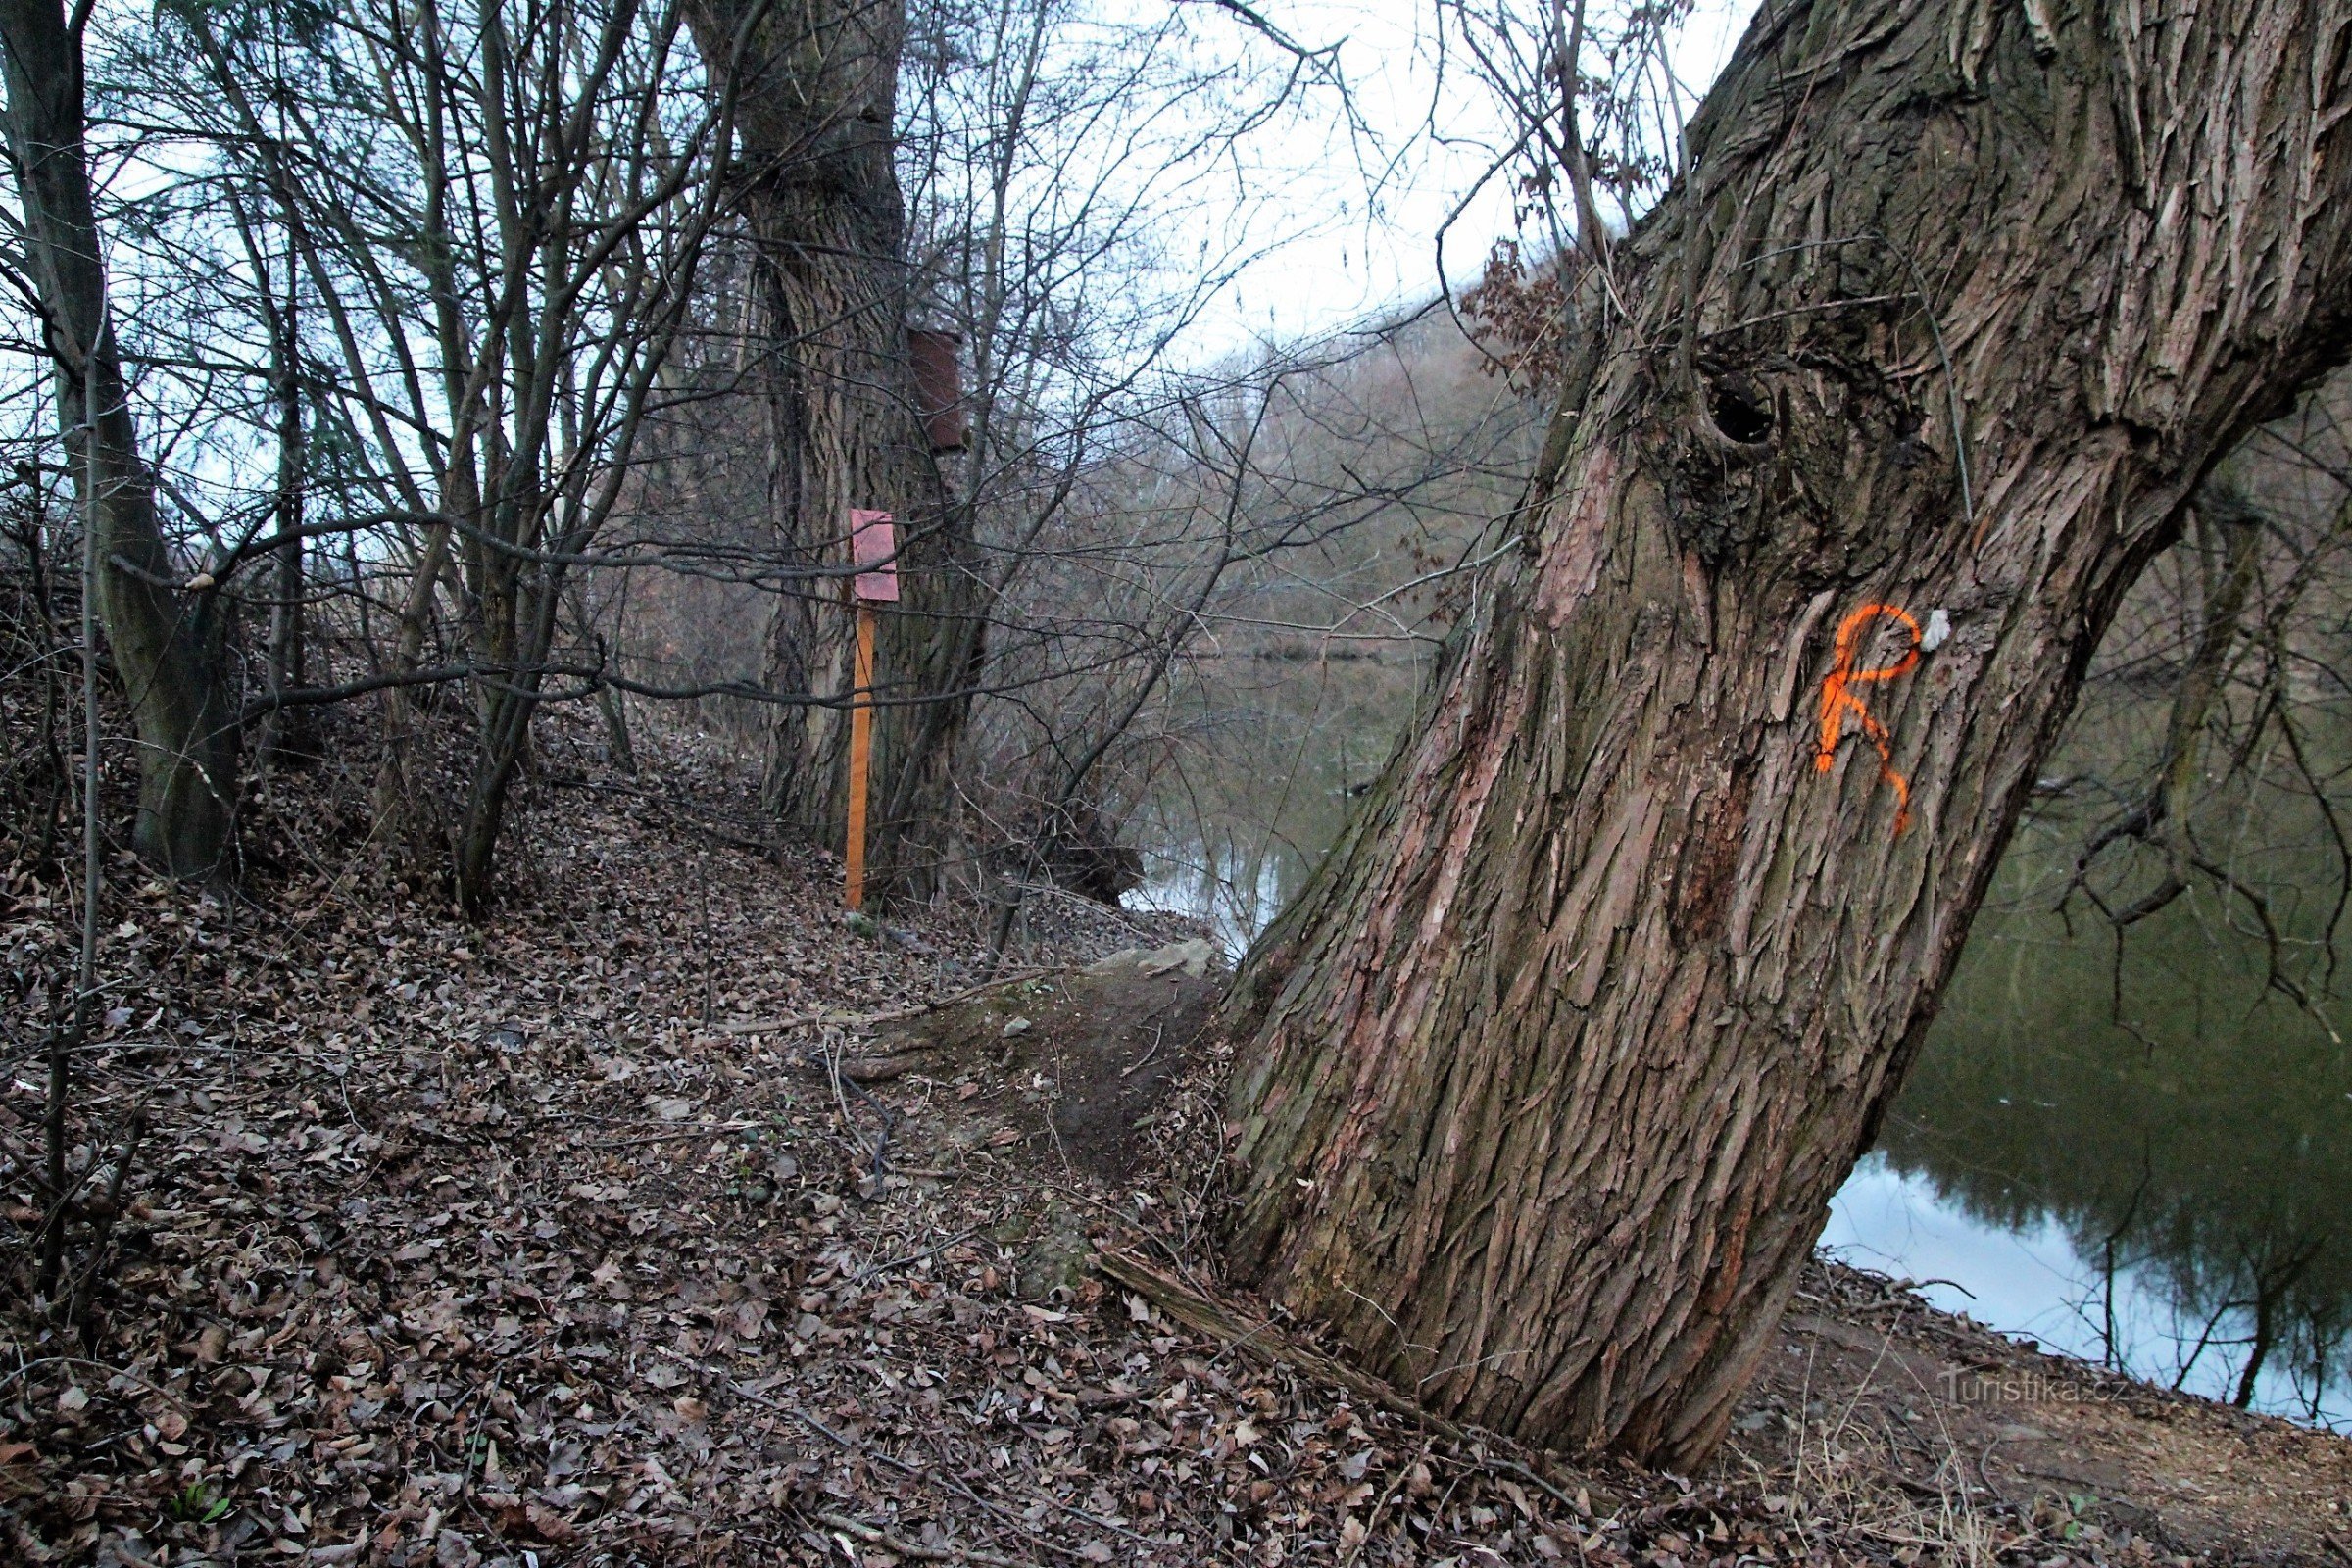 十字架は、スヴラトカ川のほとりで XNUMX つの古いポプラの間に配置されます。